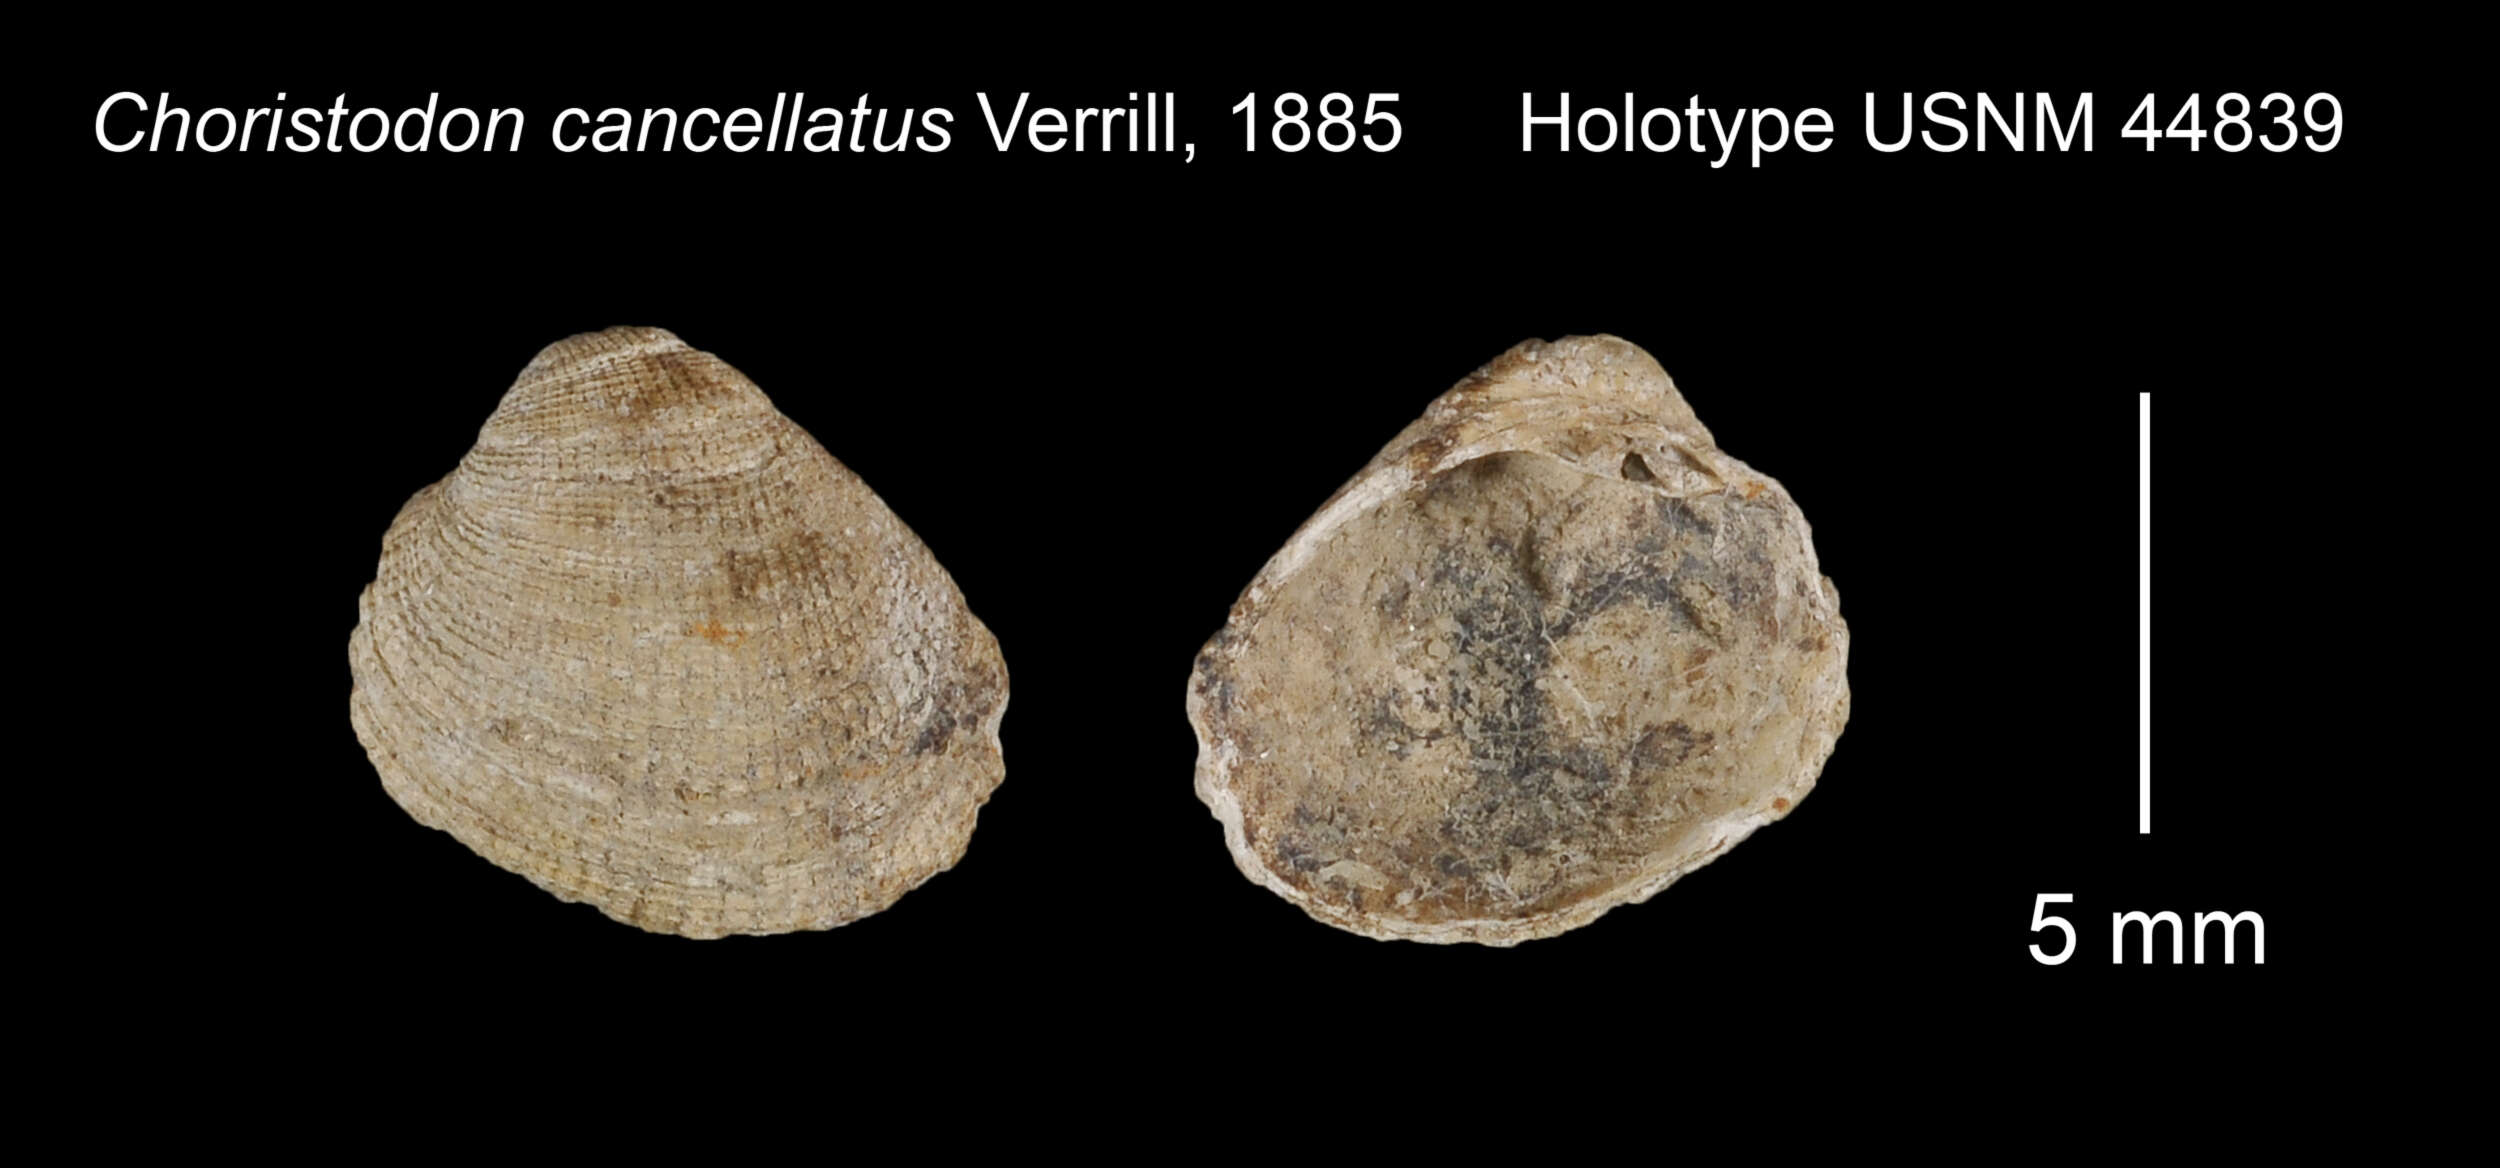 Image of Choristodon cancellatus A. E. Verrill 1885